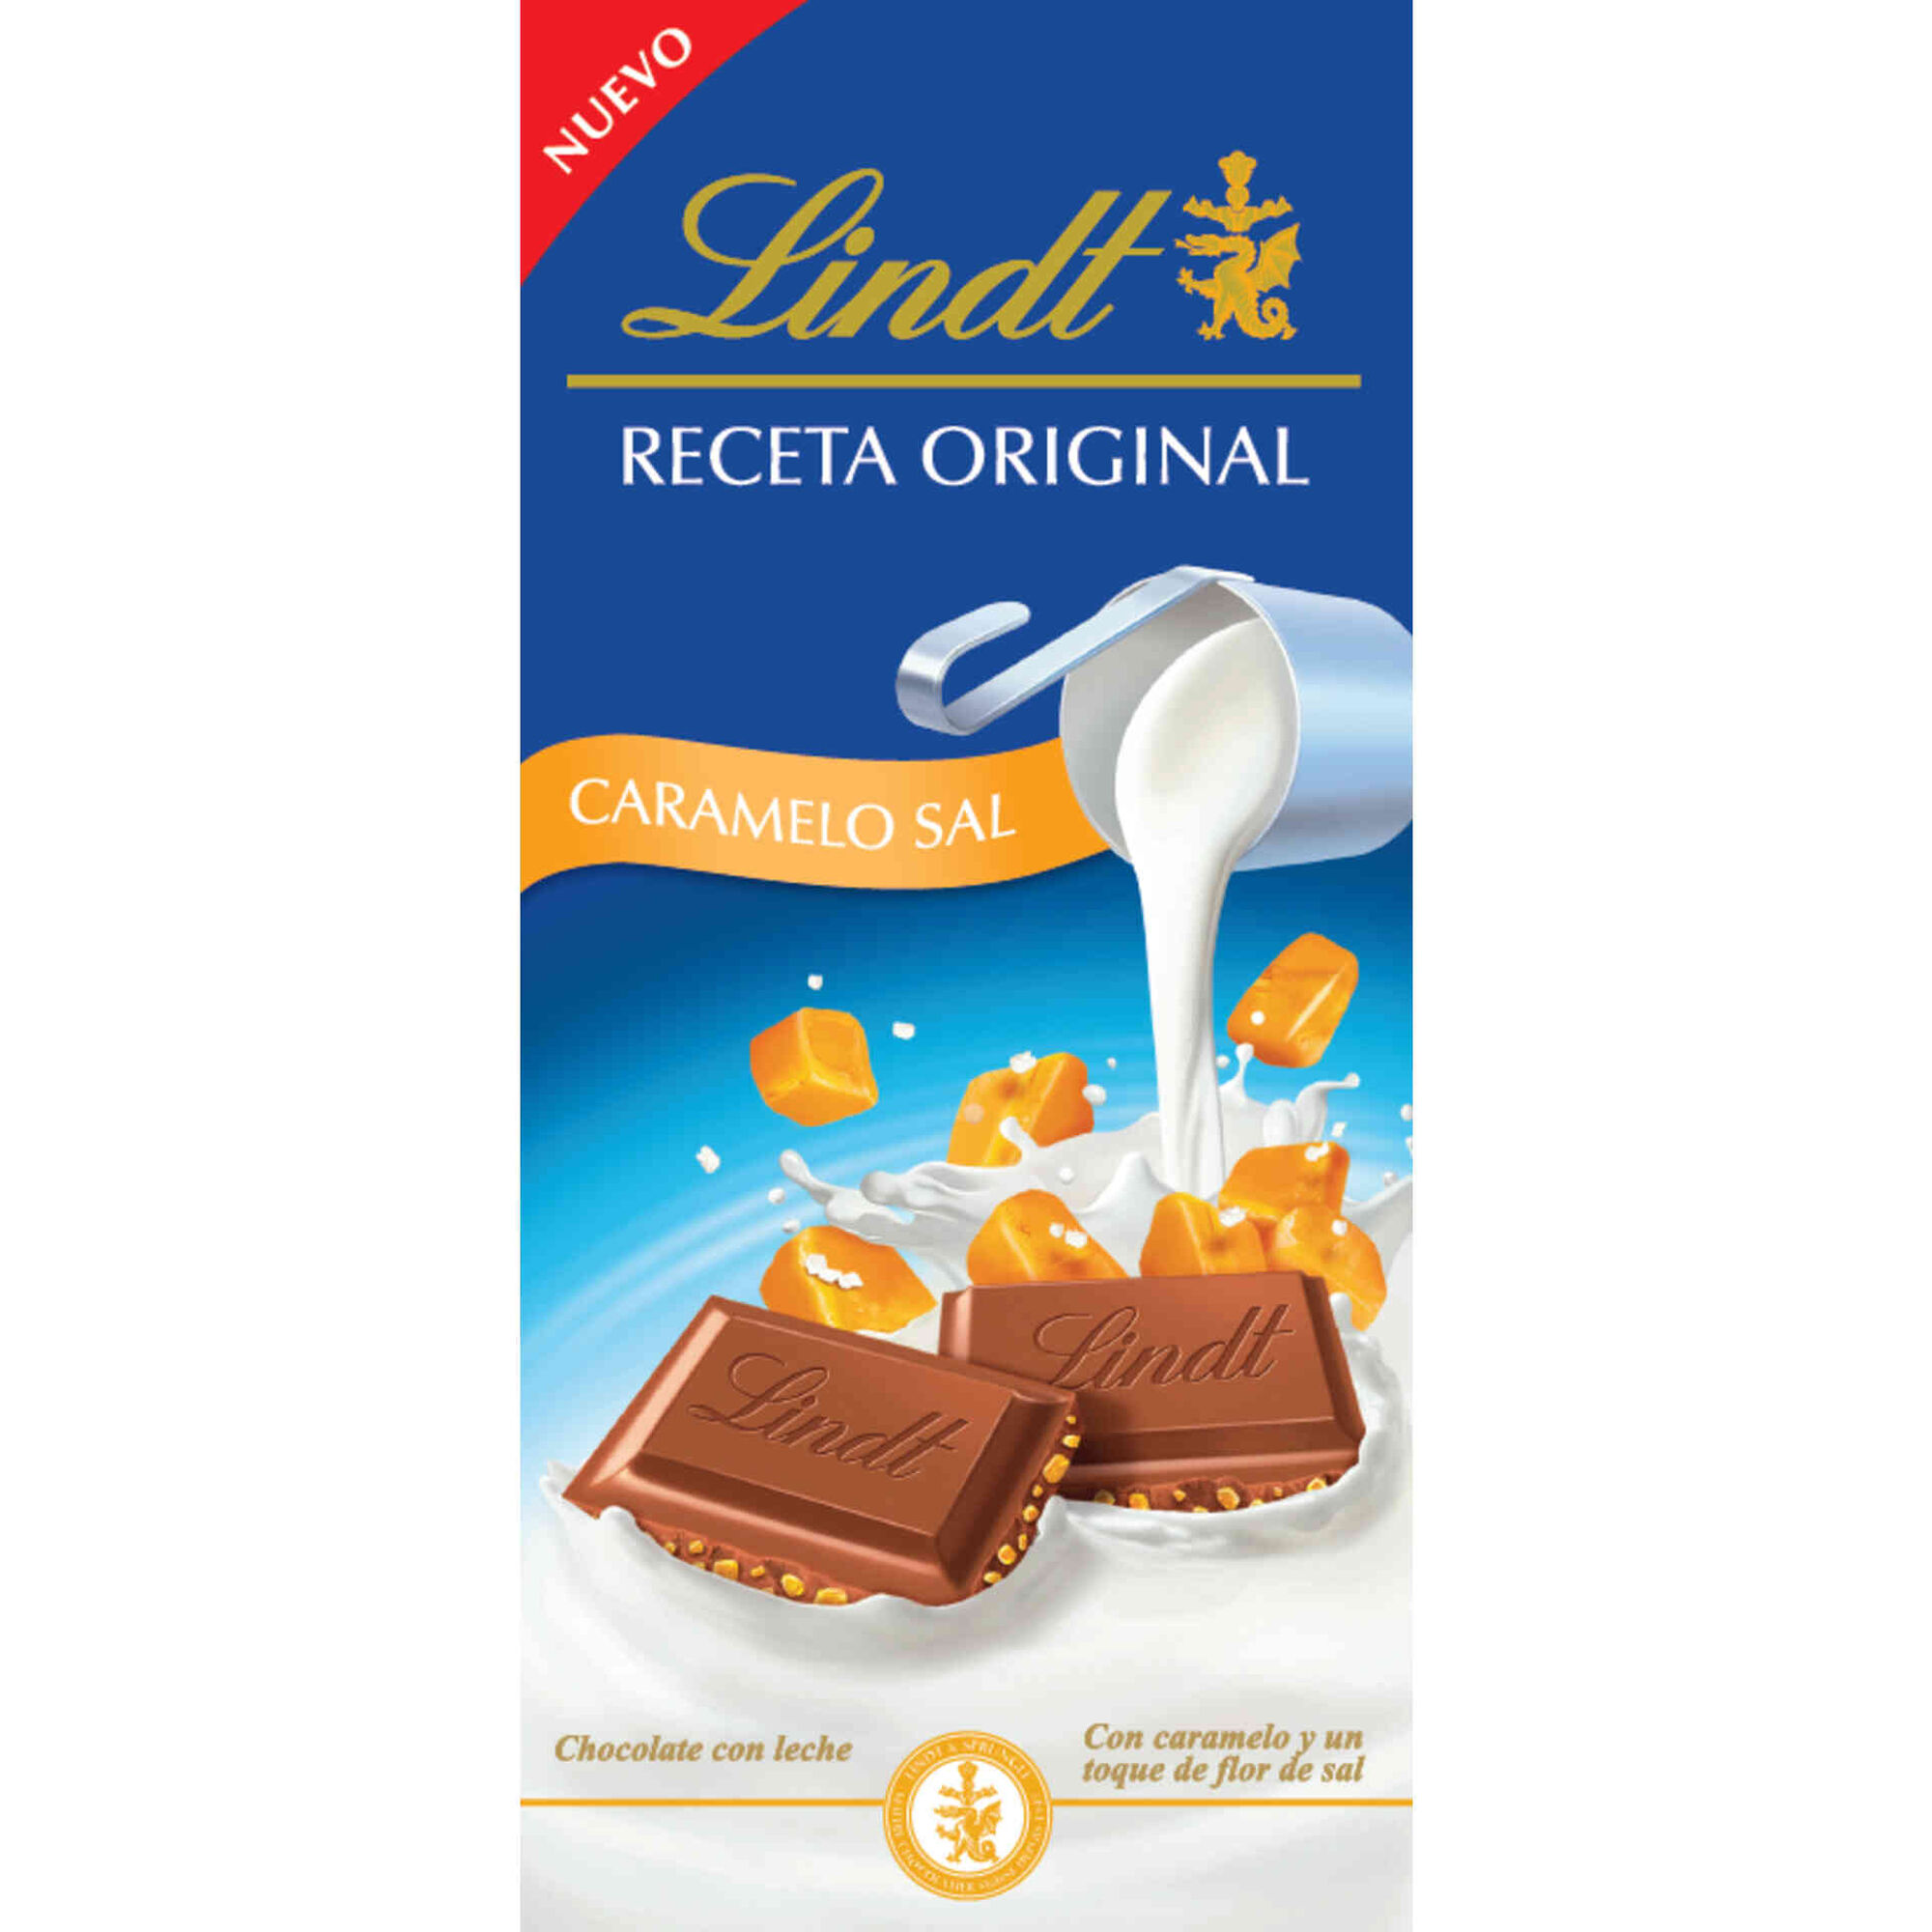 Tablete de Chocolate de Leite com Caramelo Salgado emb. 125 gr - Lindt |  Continente